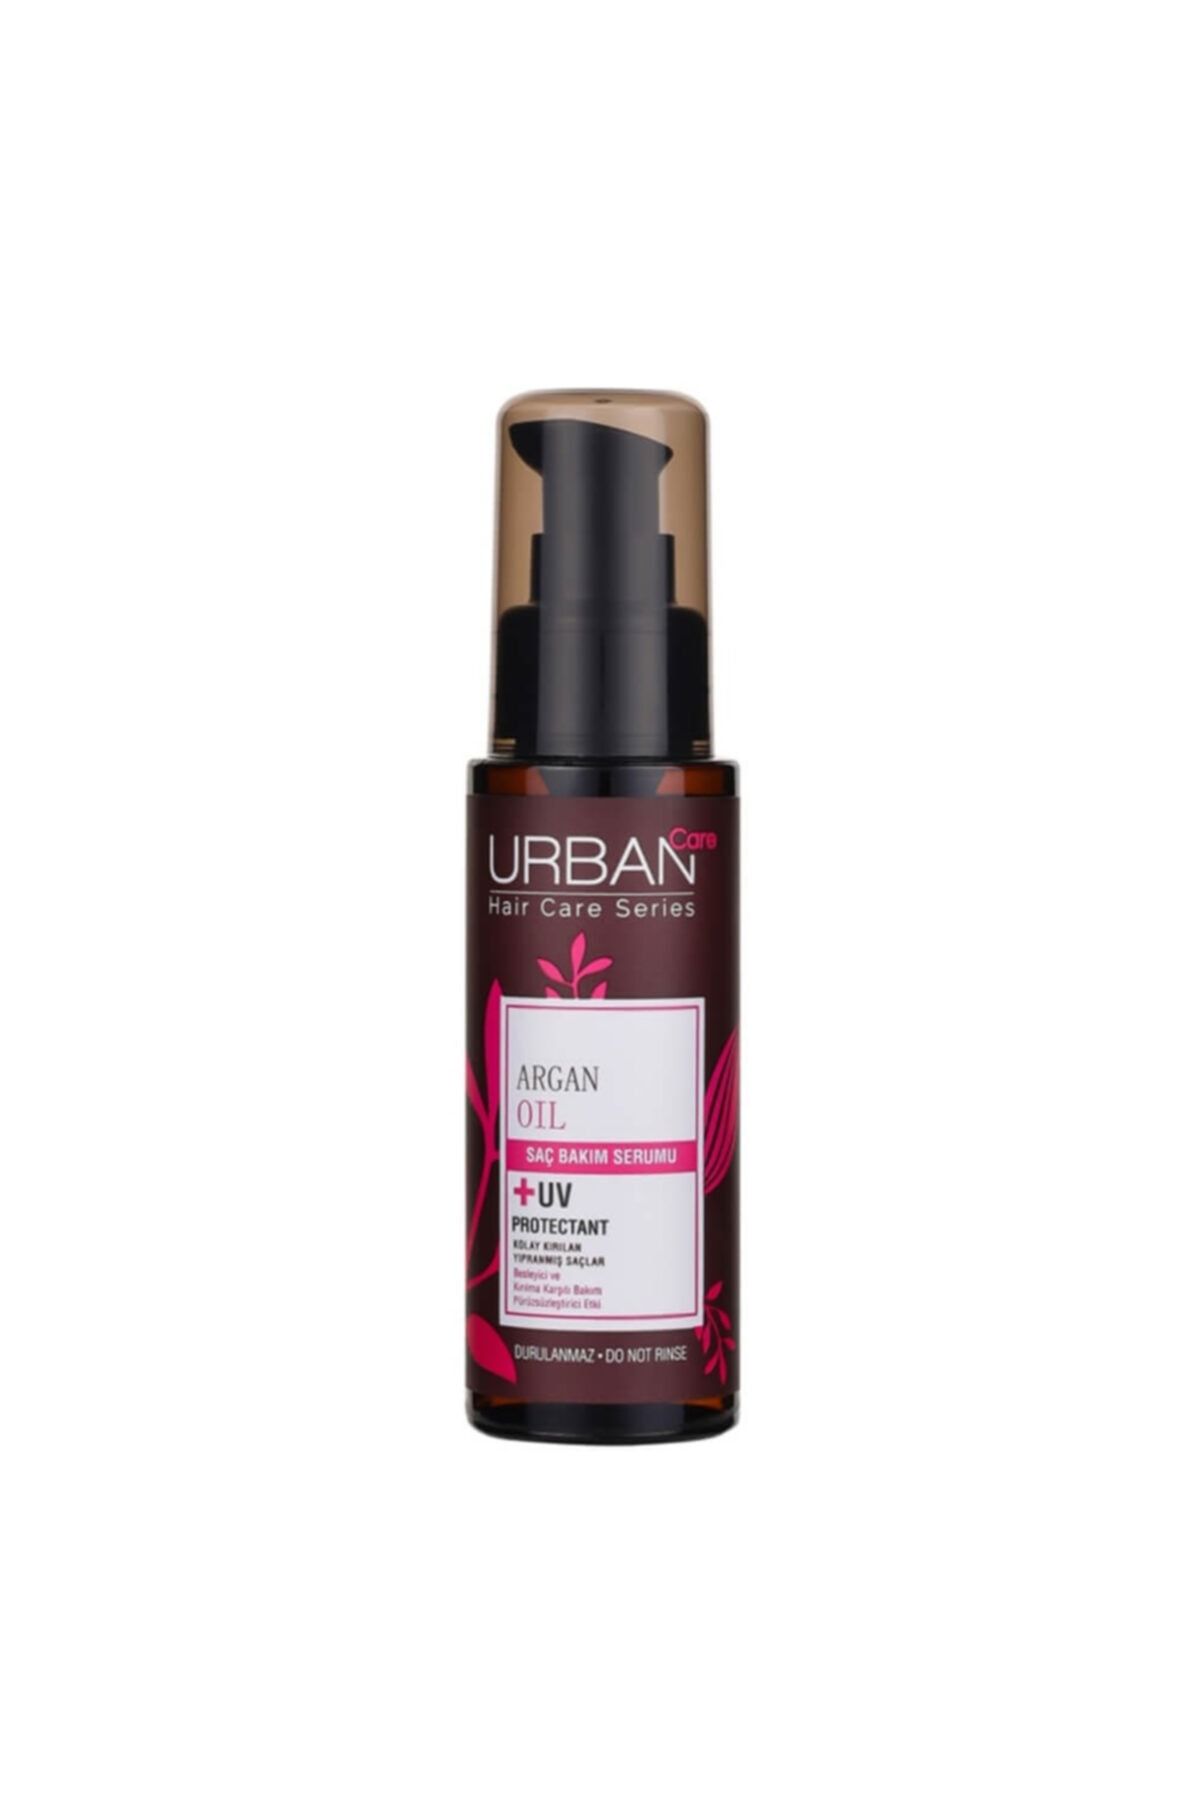 Urban Care Urban Hair Care Series Argan Oil Saç Bakım Serumu 75ml